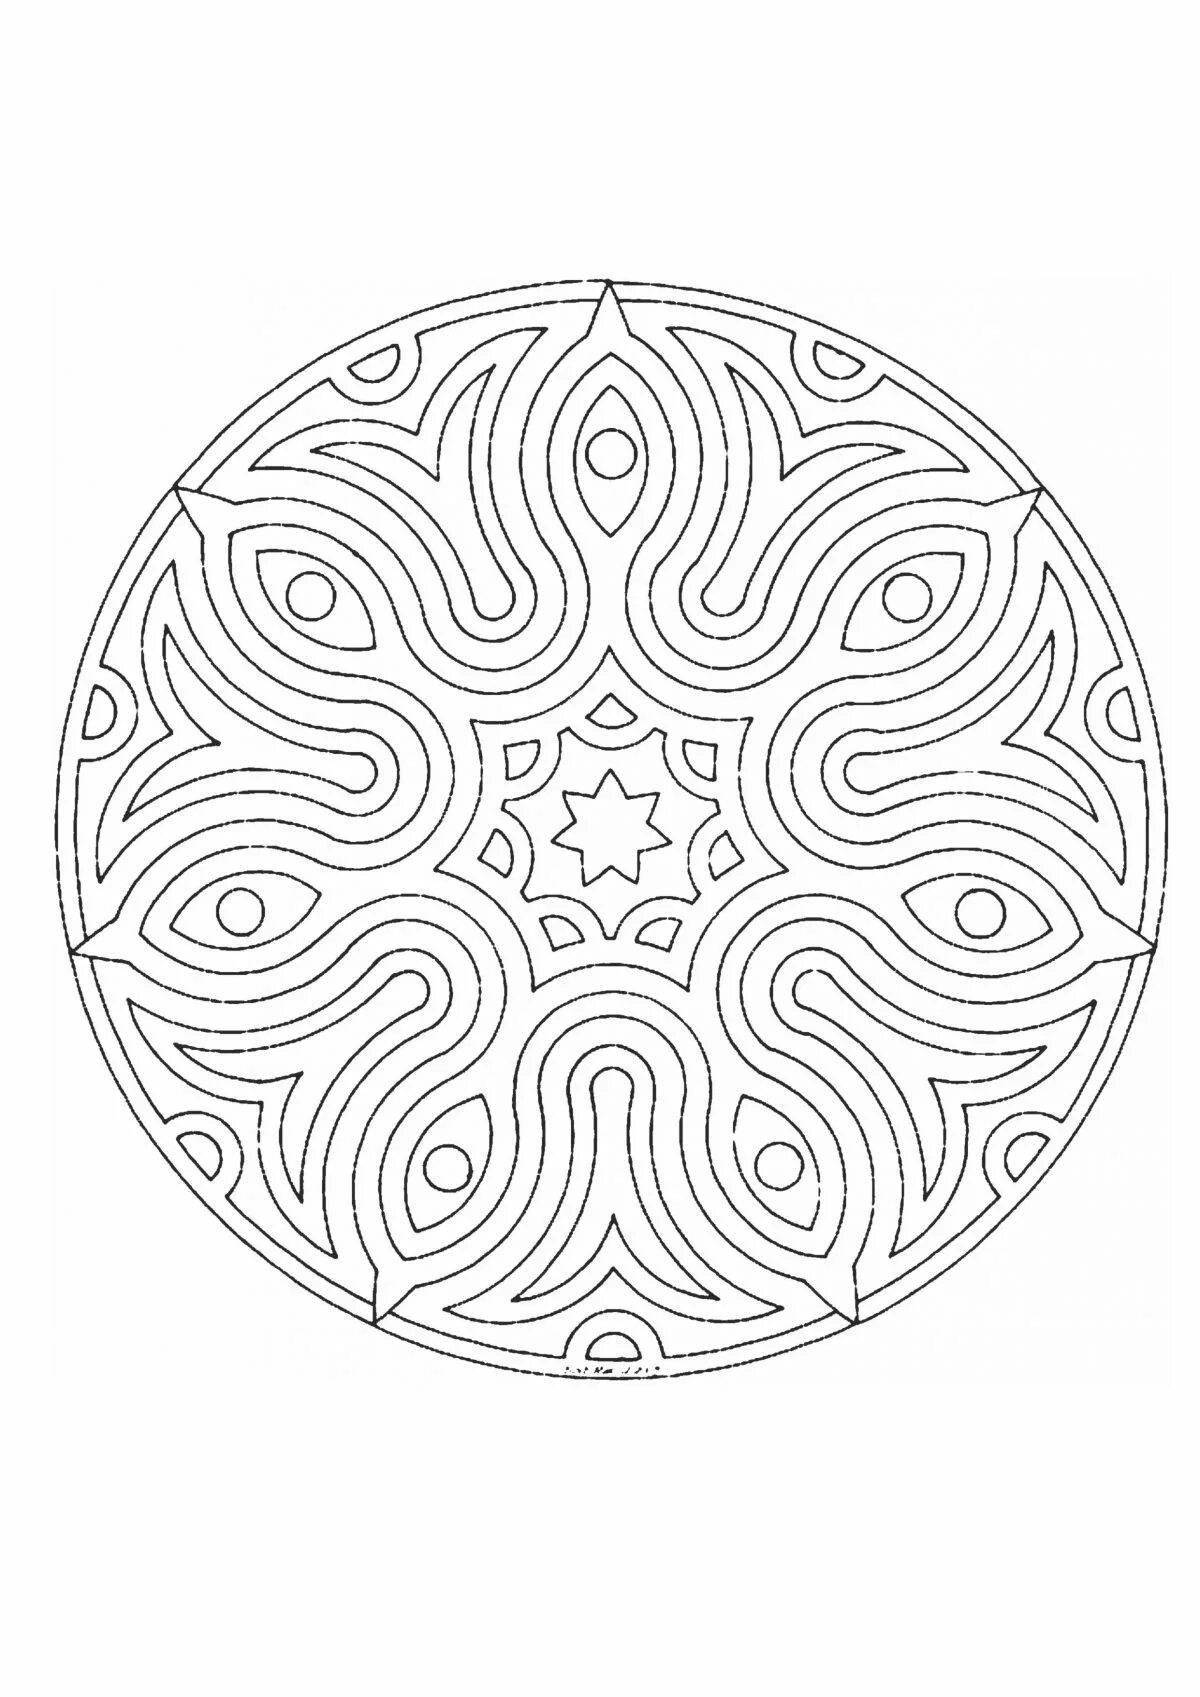 Intricate ornament in a circle